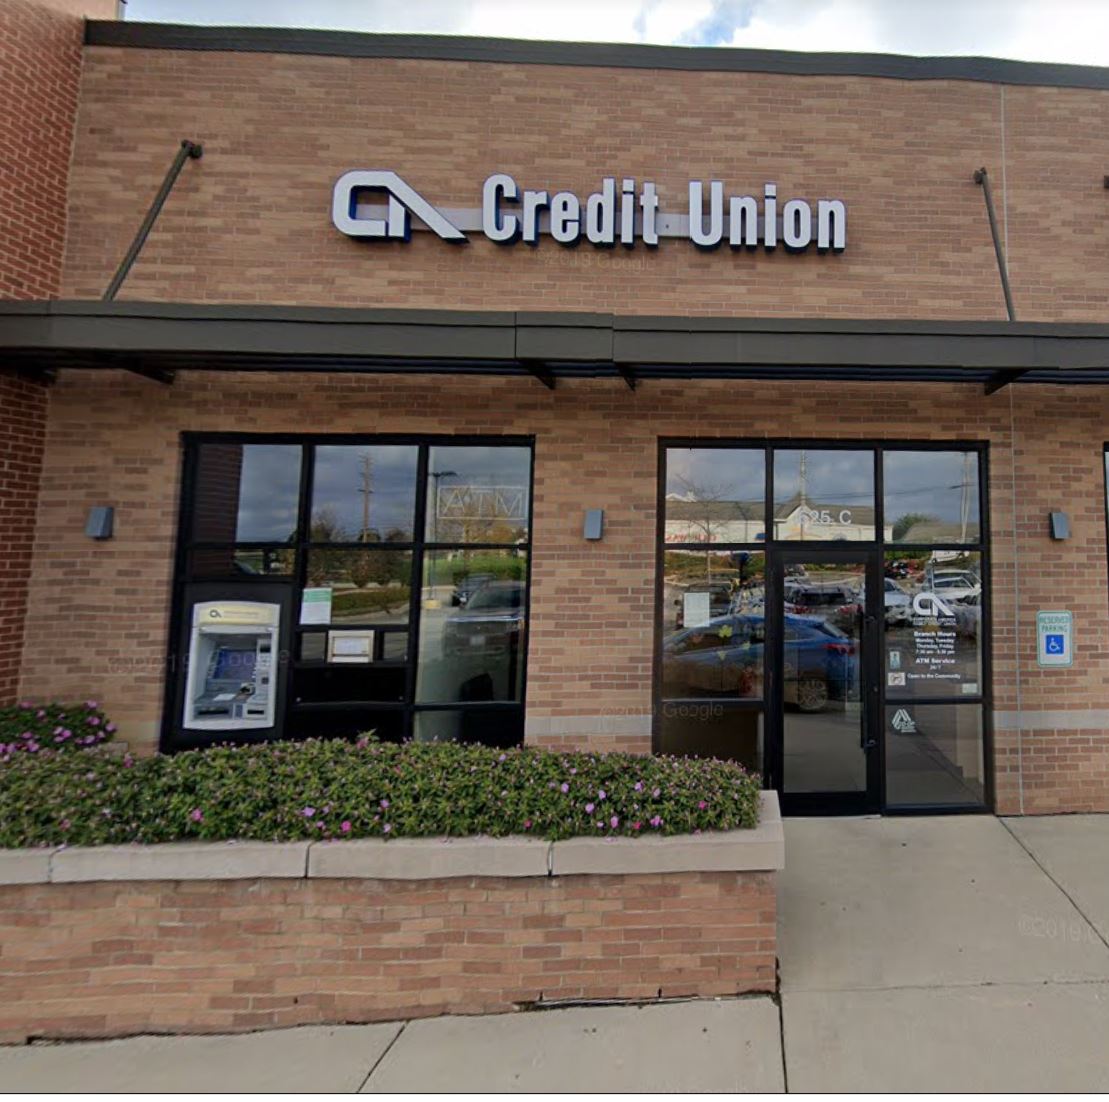 Corporate America Family Credit Union